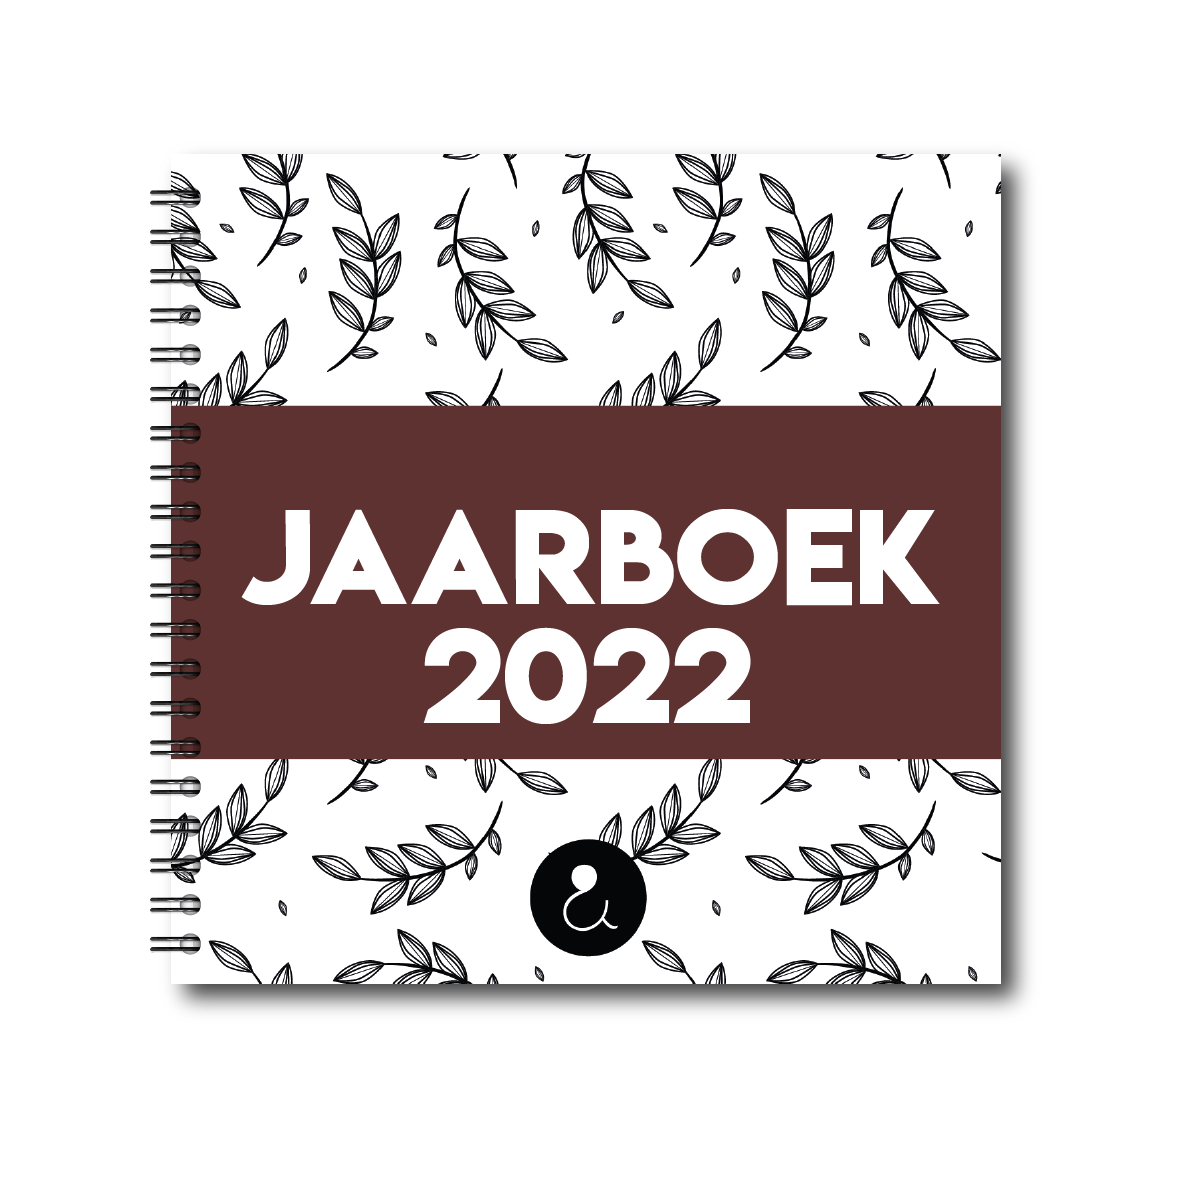 jaarboek_roest-2022